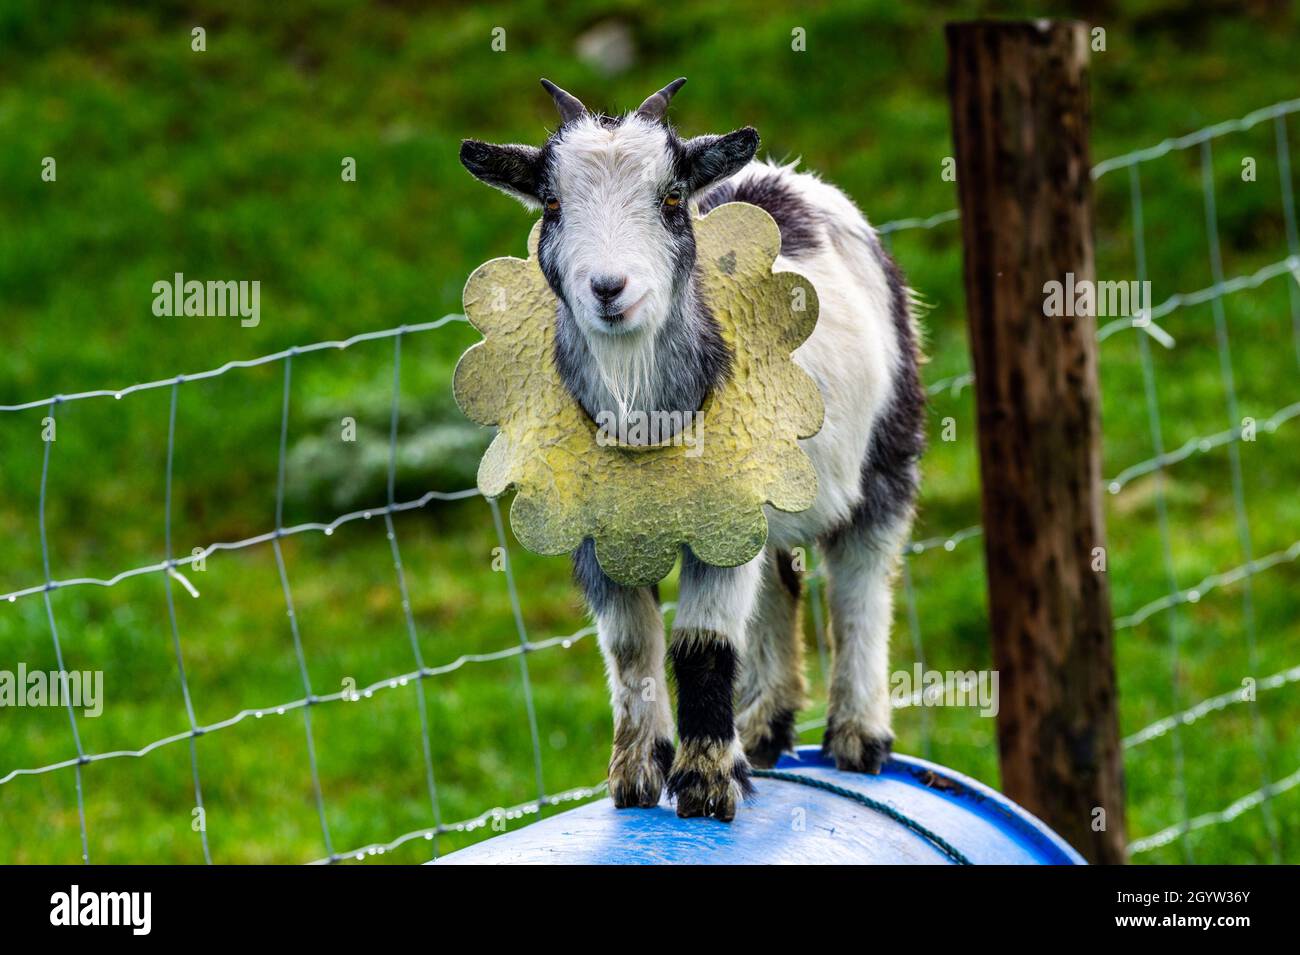 Kealkill, West Cork, Irlande.9 octobre 2021.Une chèvre pygmée se balance sur un baril bleu à Kealkill, West Cork.Crédit : AG News/Alay Live News Banque D'Images